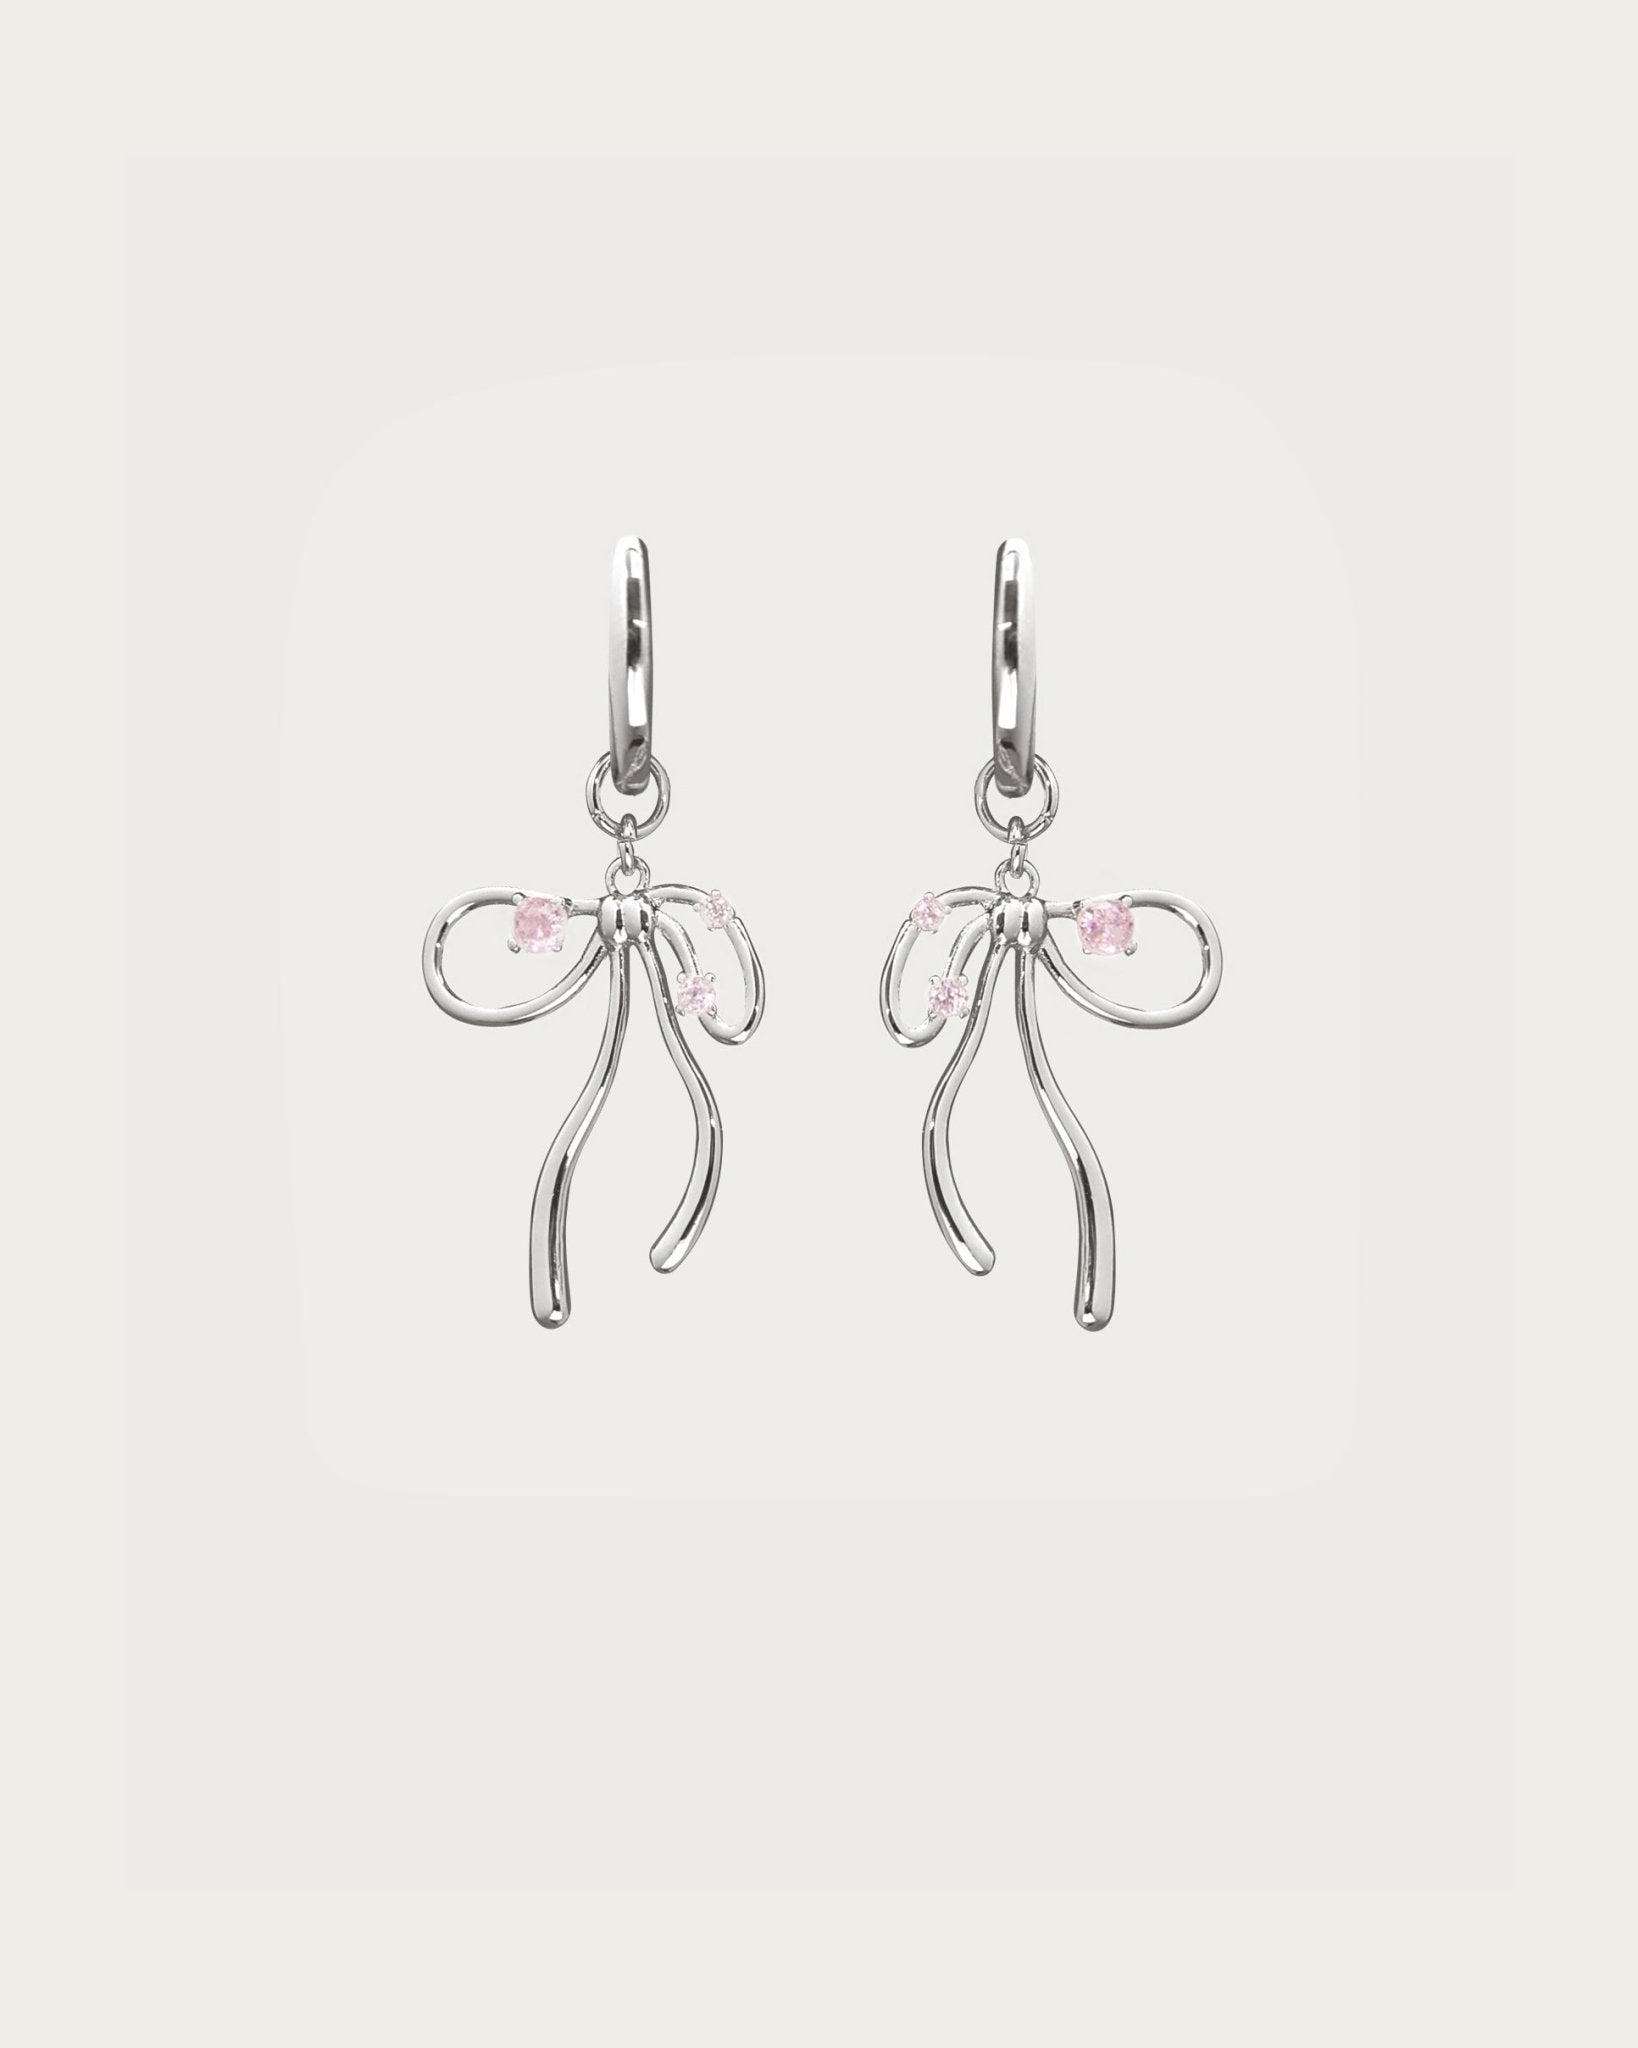 Die Miffy-Ohrringe aus rosa Silber